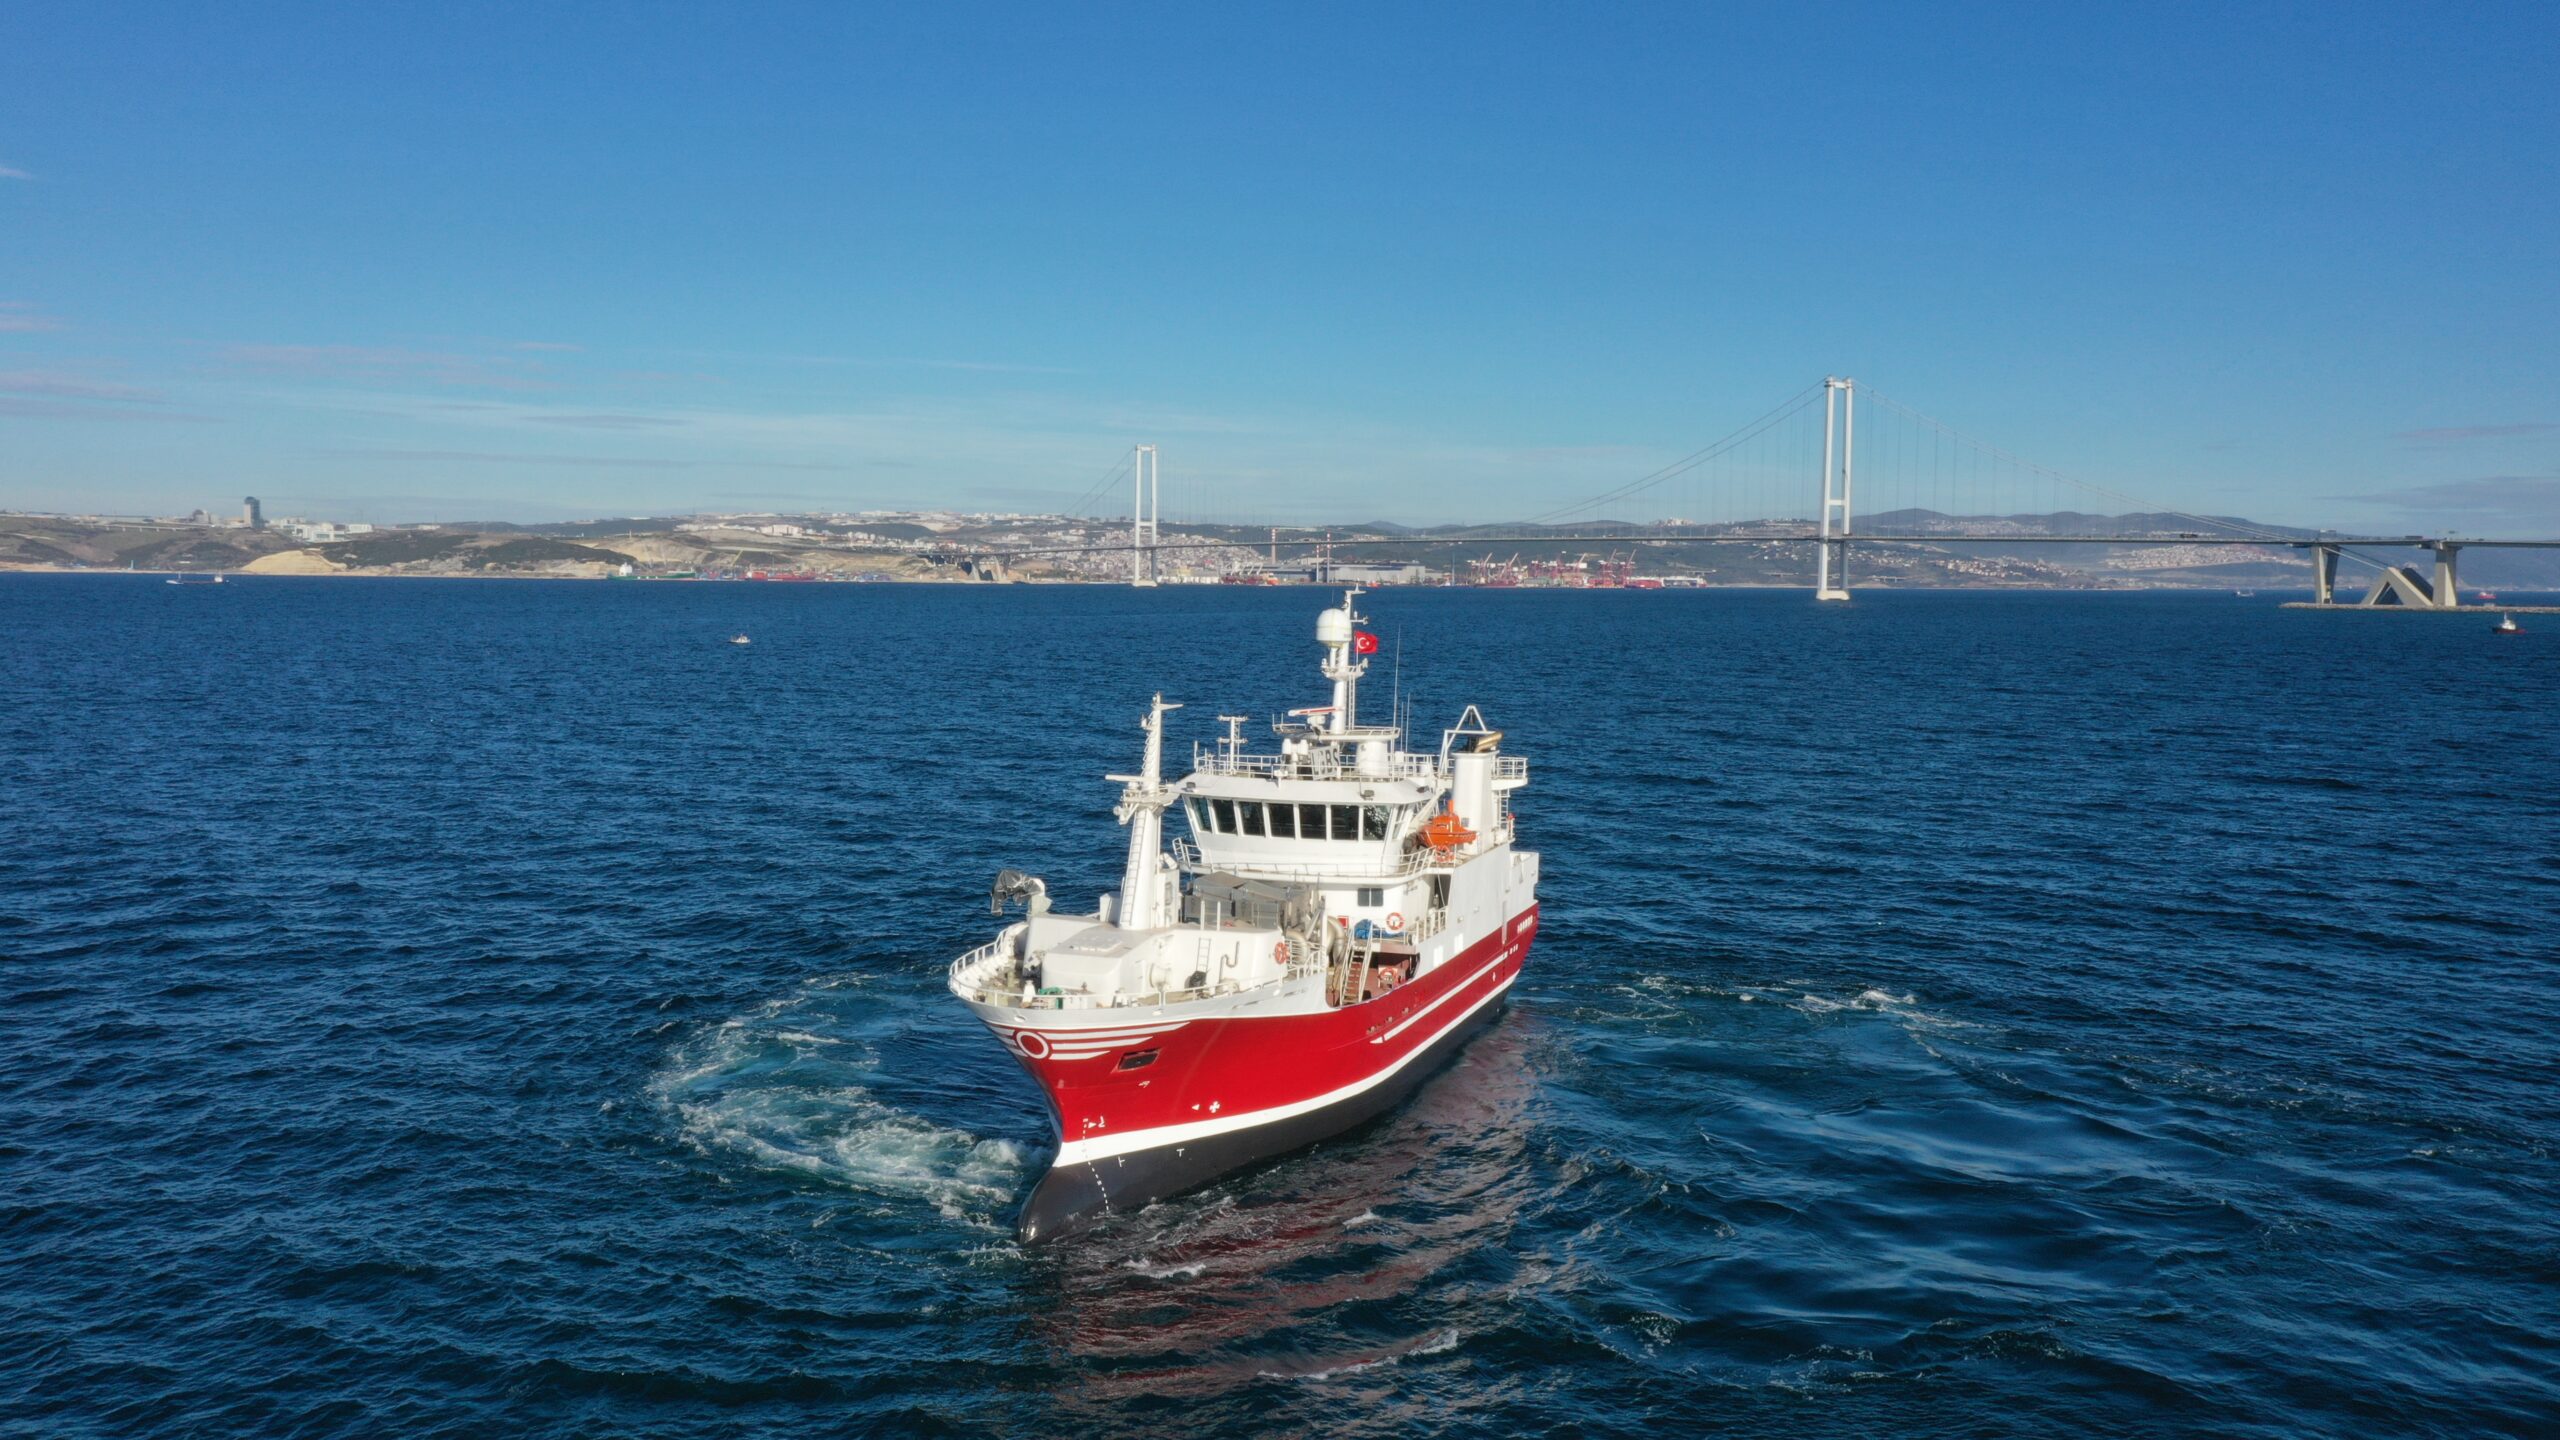 Özata Shipyard Build | FISHING VESSEL PELAGIC TRAWLER